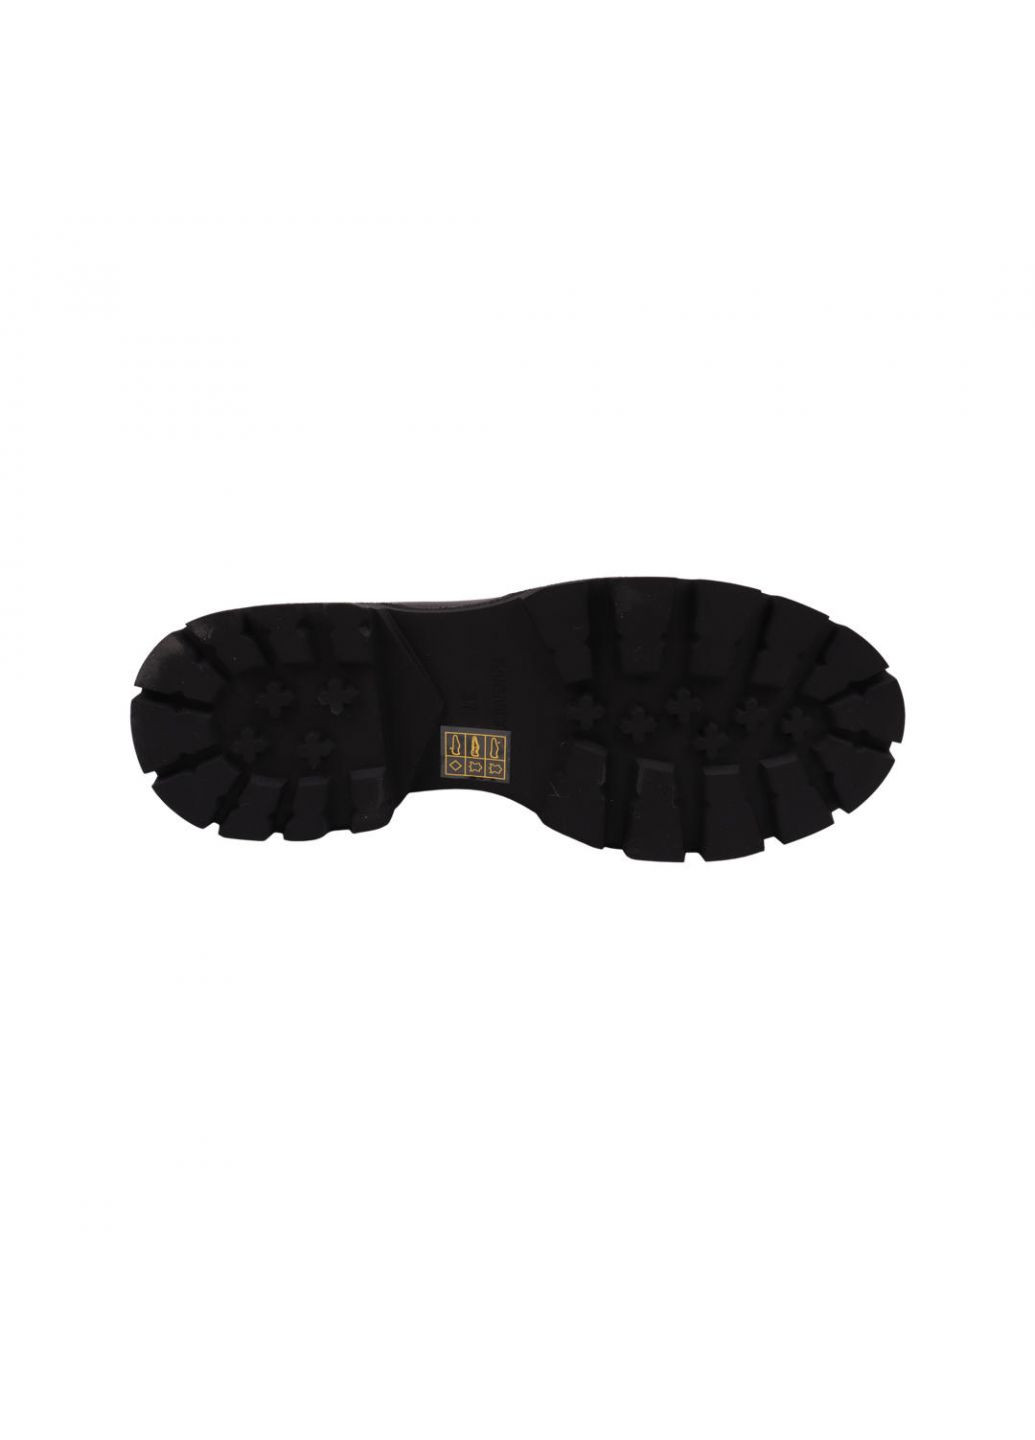 Туфли женские черные натуральная кожа Anemone